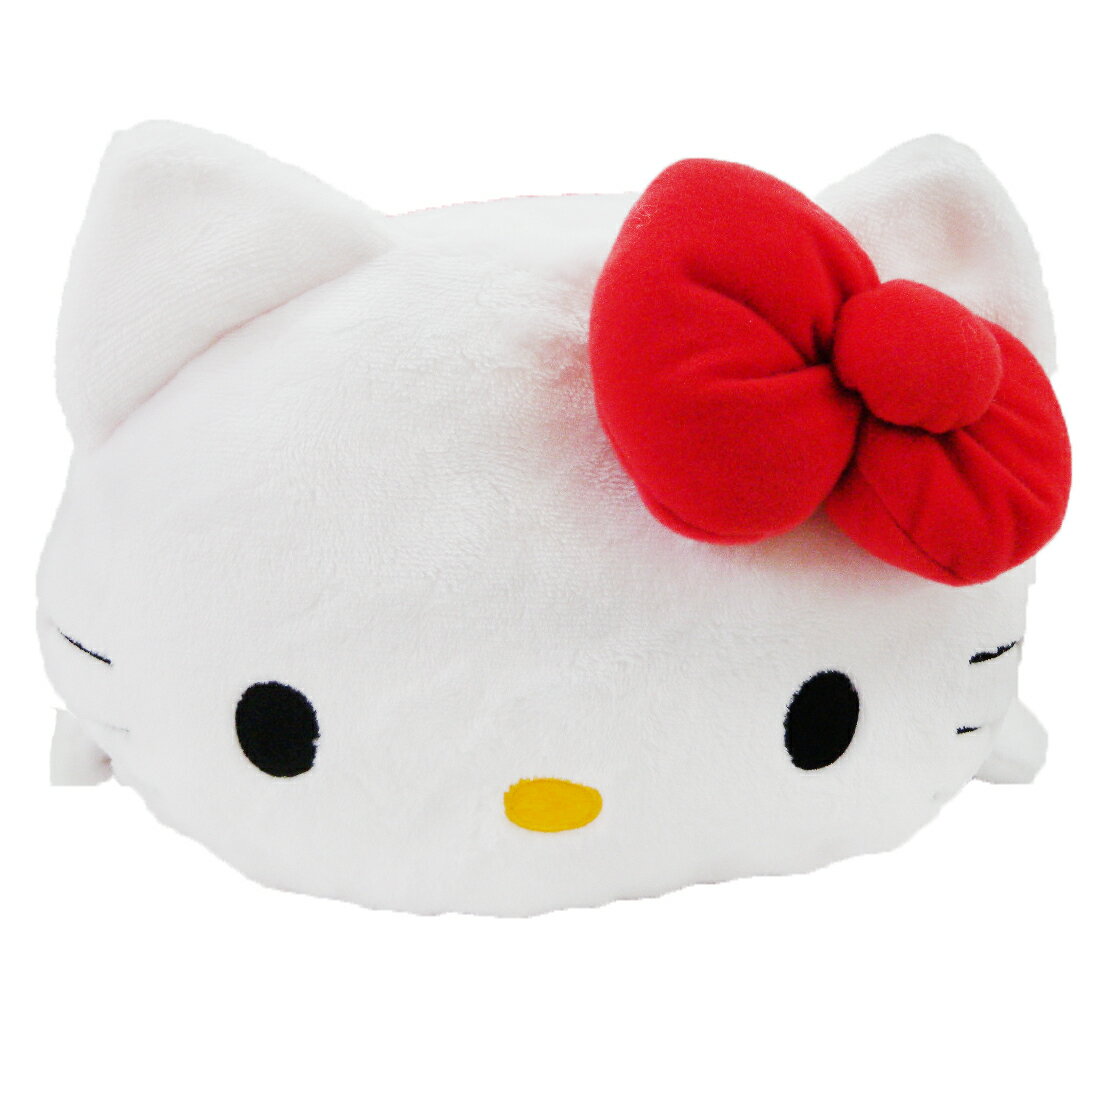 【唯愛日本】14100200008 KT筒形抱枕-紅 三麗鷗 Hello Kitty 凱蒂貓 枕頭 靠枕 午安枕 玩偶